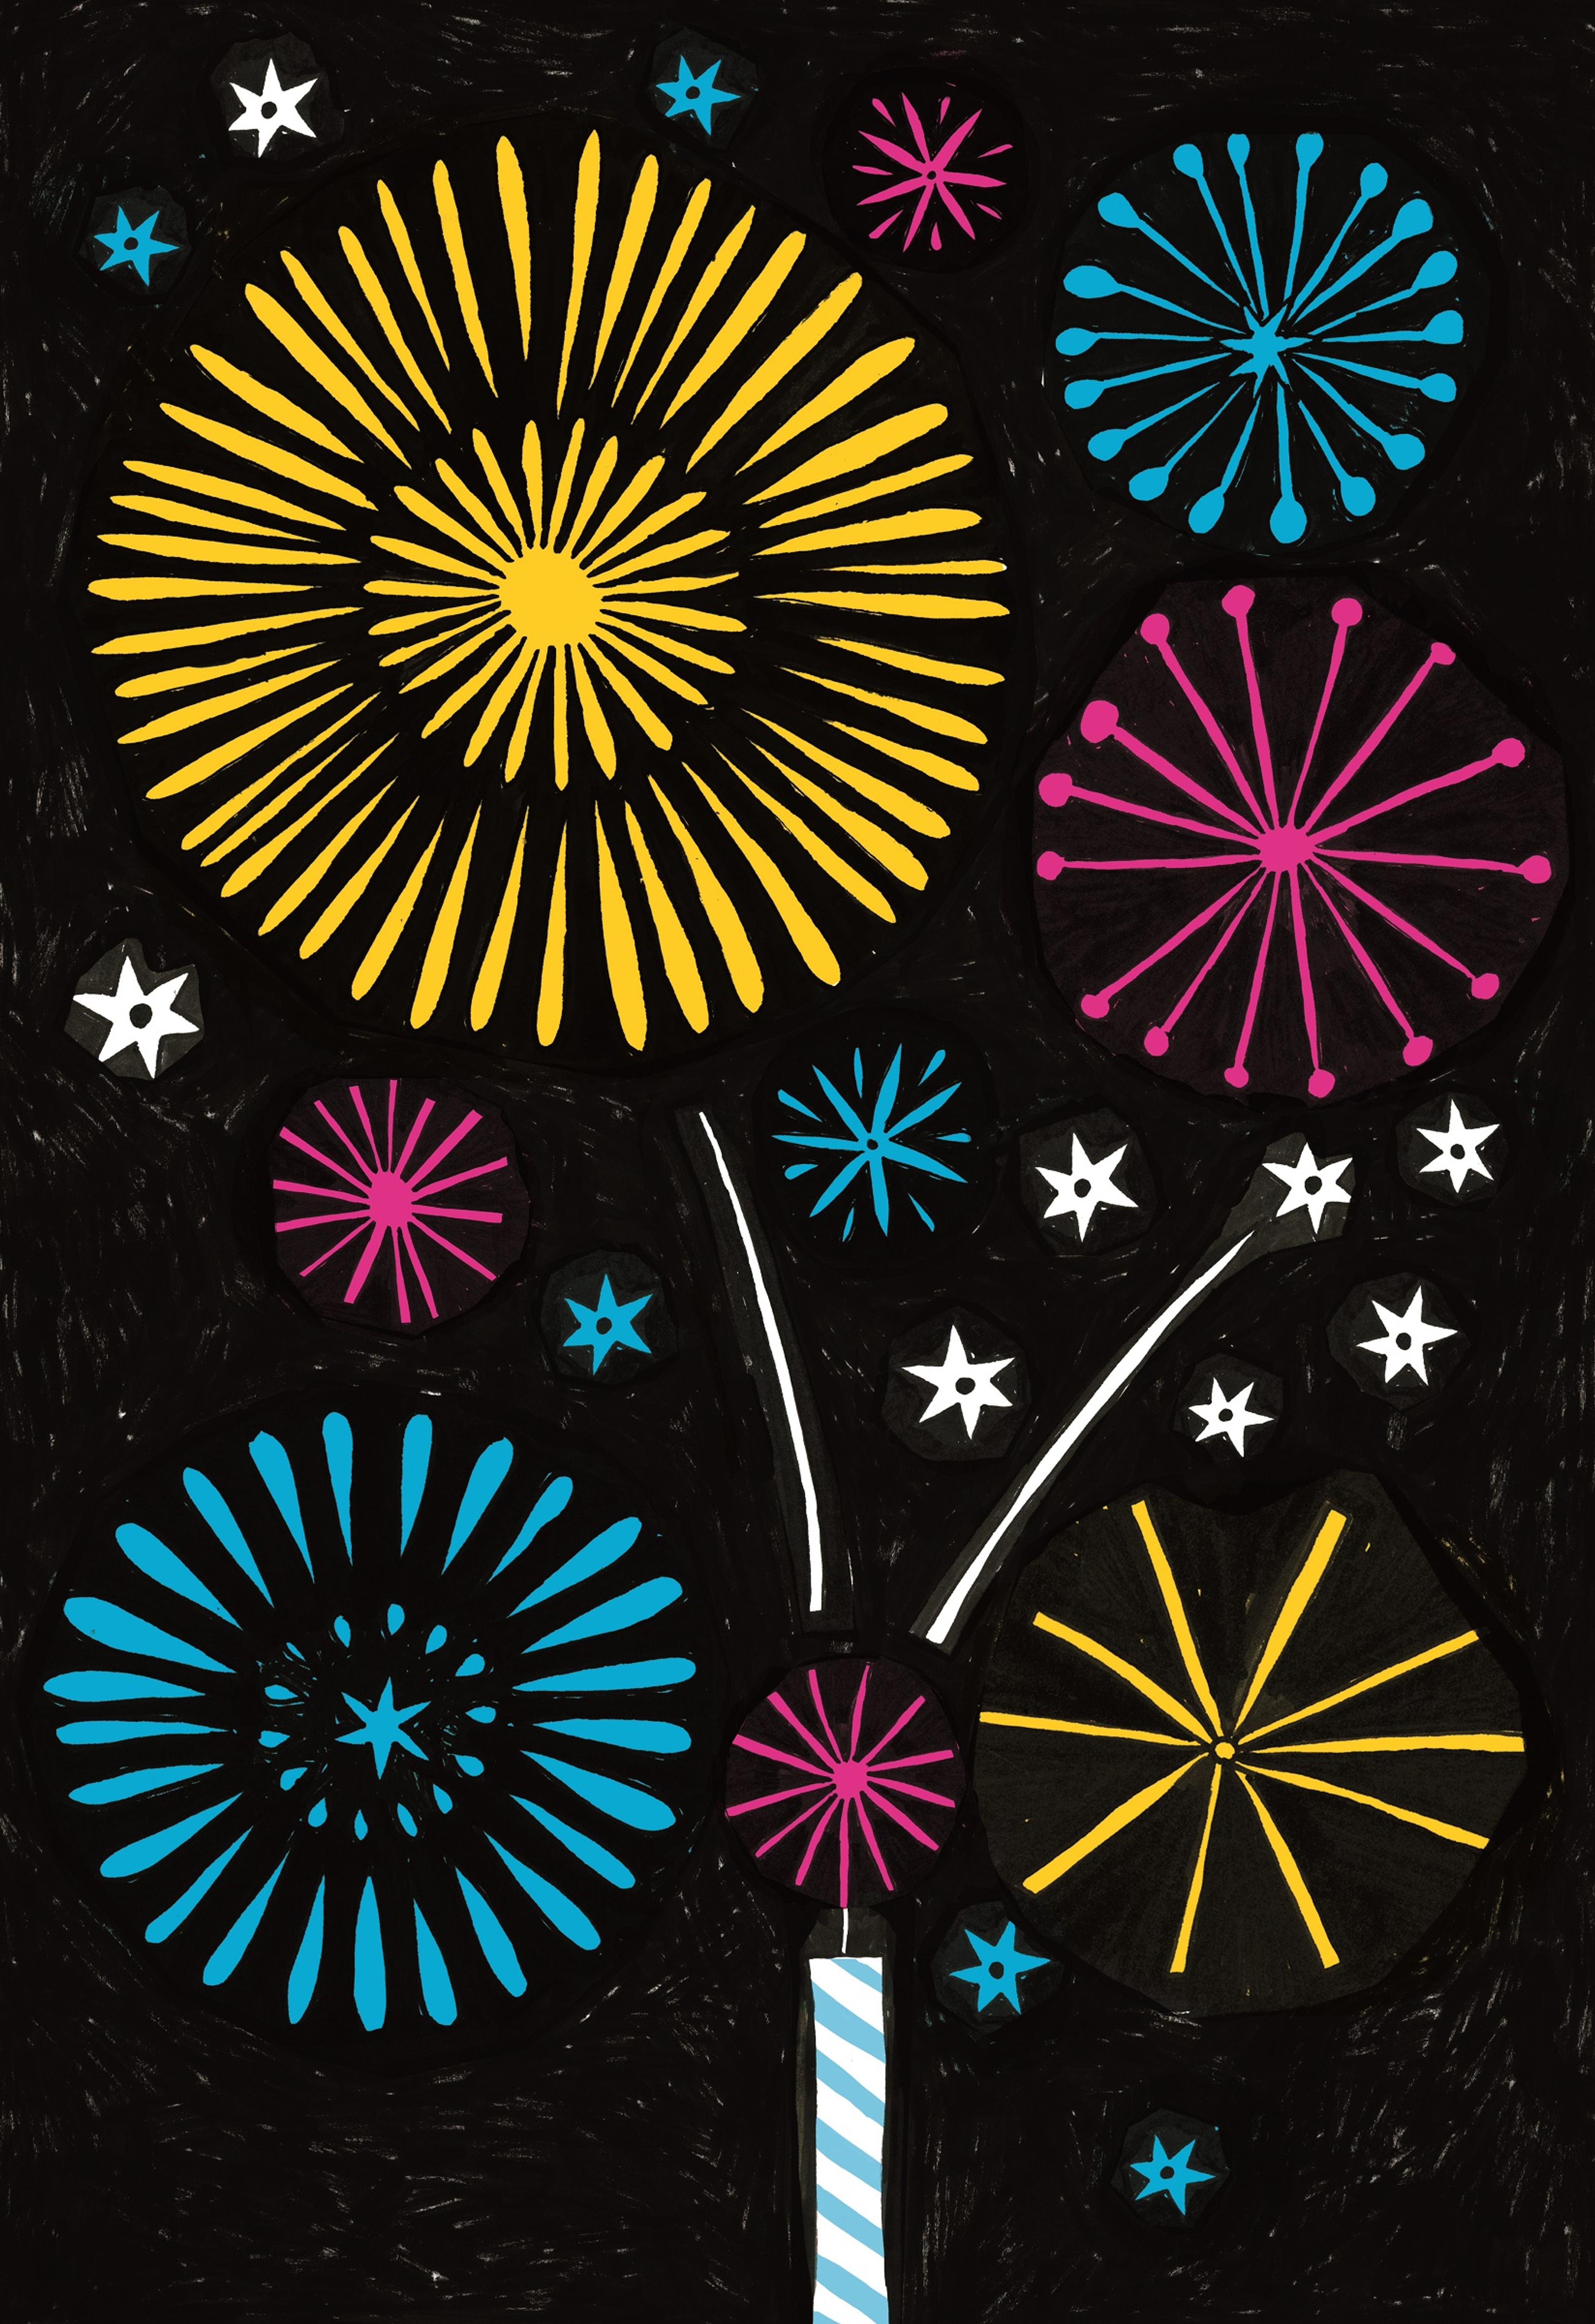 Illustration of a sparkler candle setting off fireworks